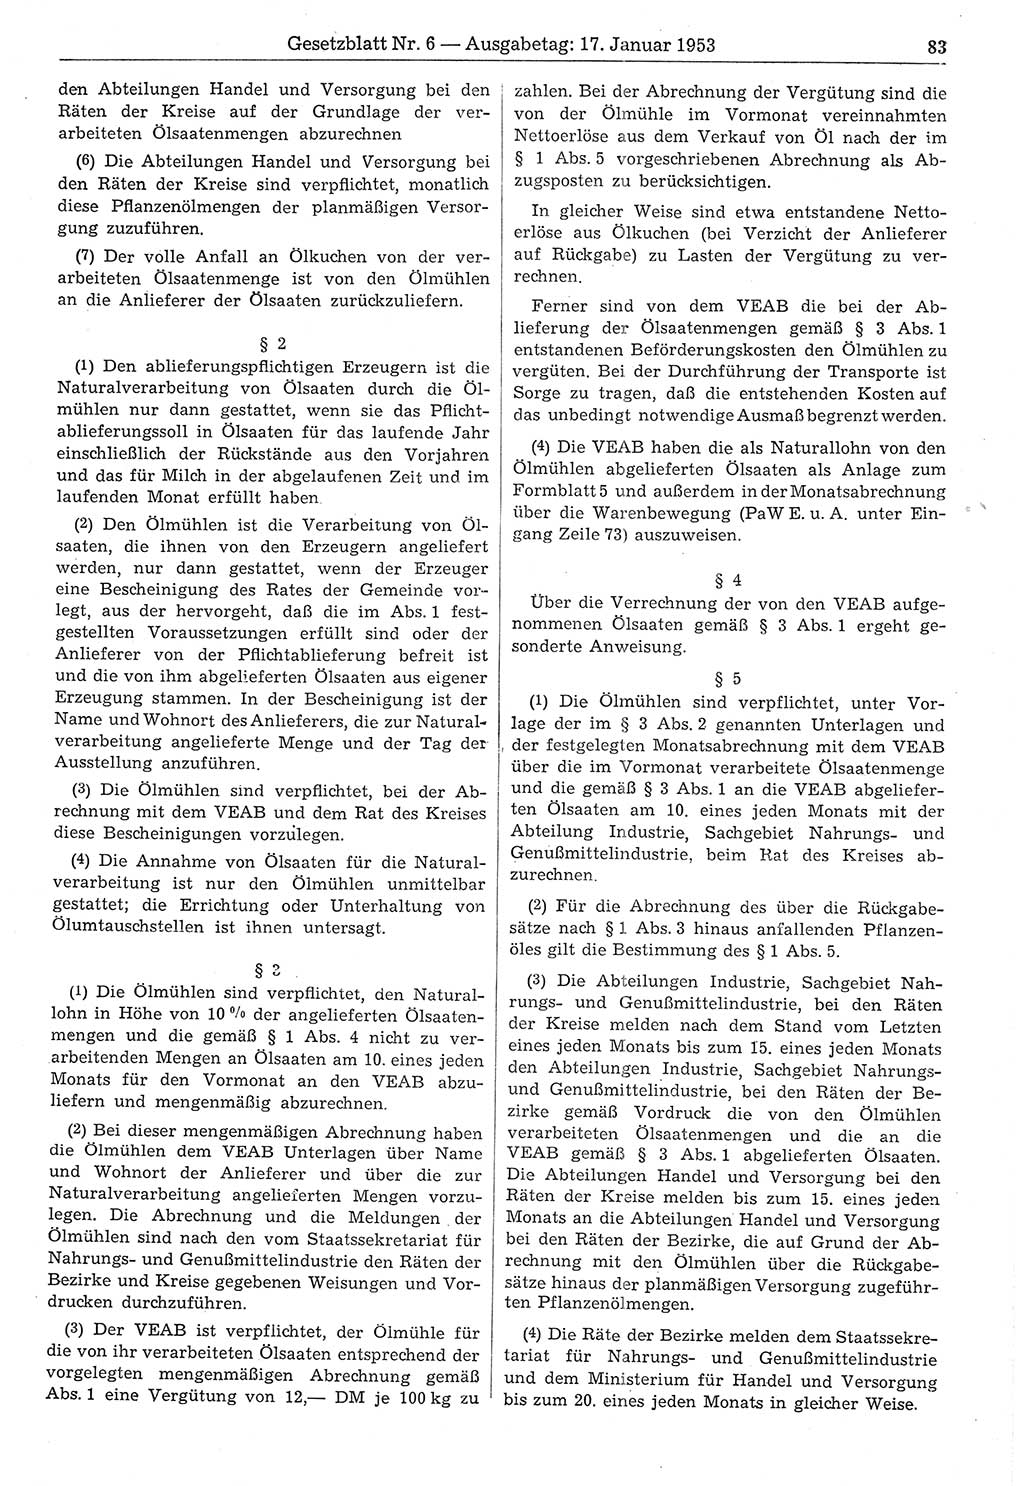 Gesetzblatt (GBl.) der Deutschen Demokratischen Republik (DDR) 1953, Seite 83 (GBl. DDR 1953, S. 83)